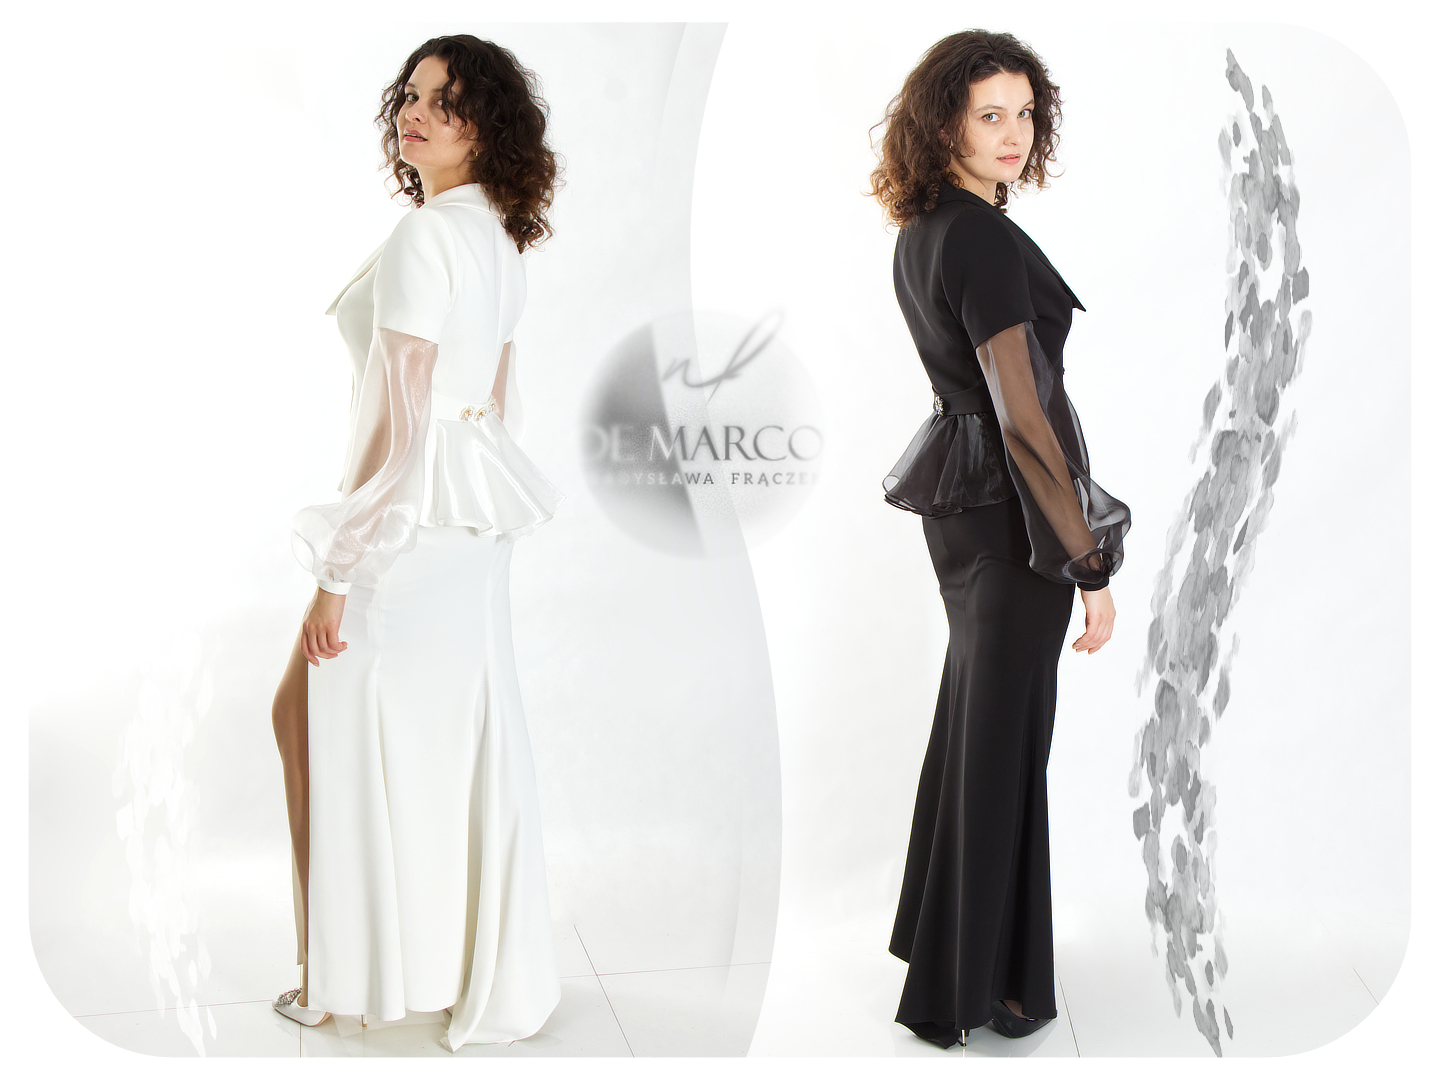 Ekskluzywne garsonki i kostiumy damskie sklep internetowy De Marco